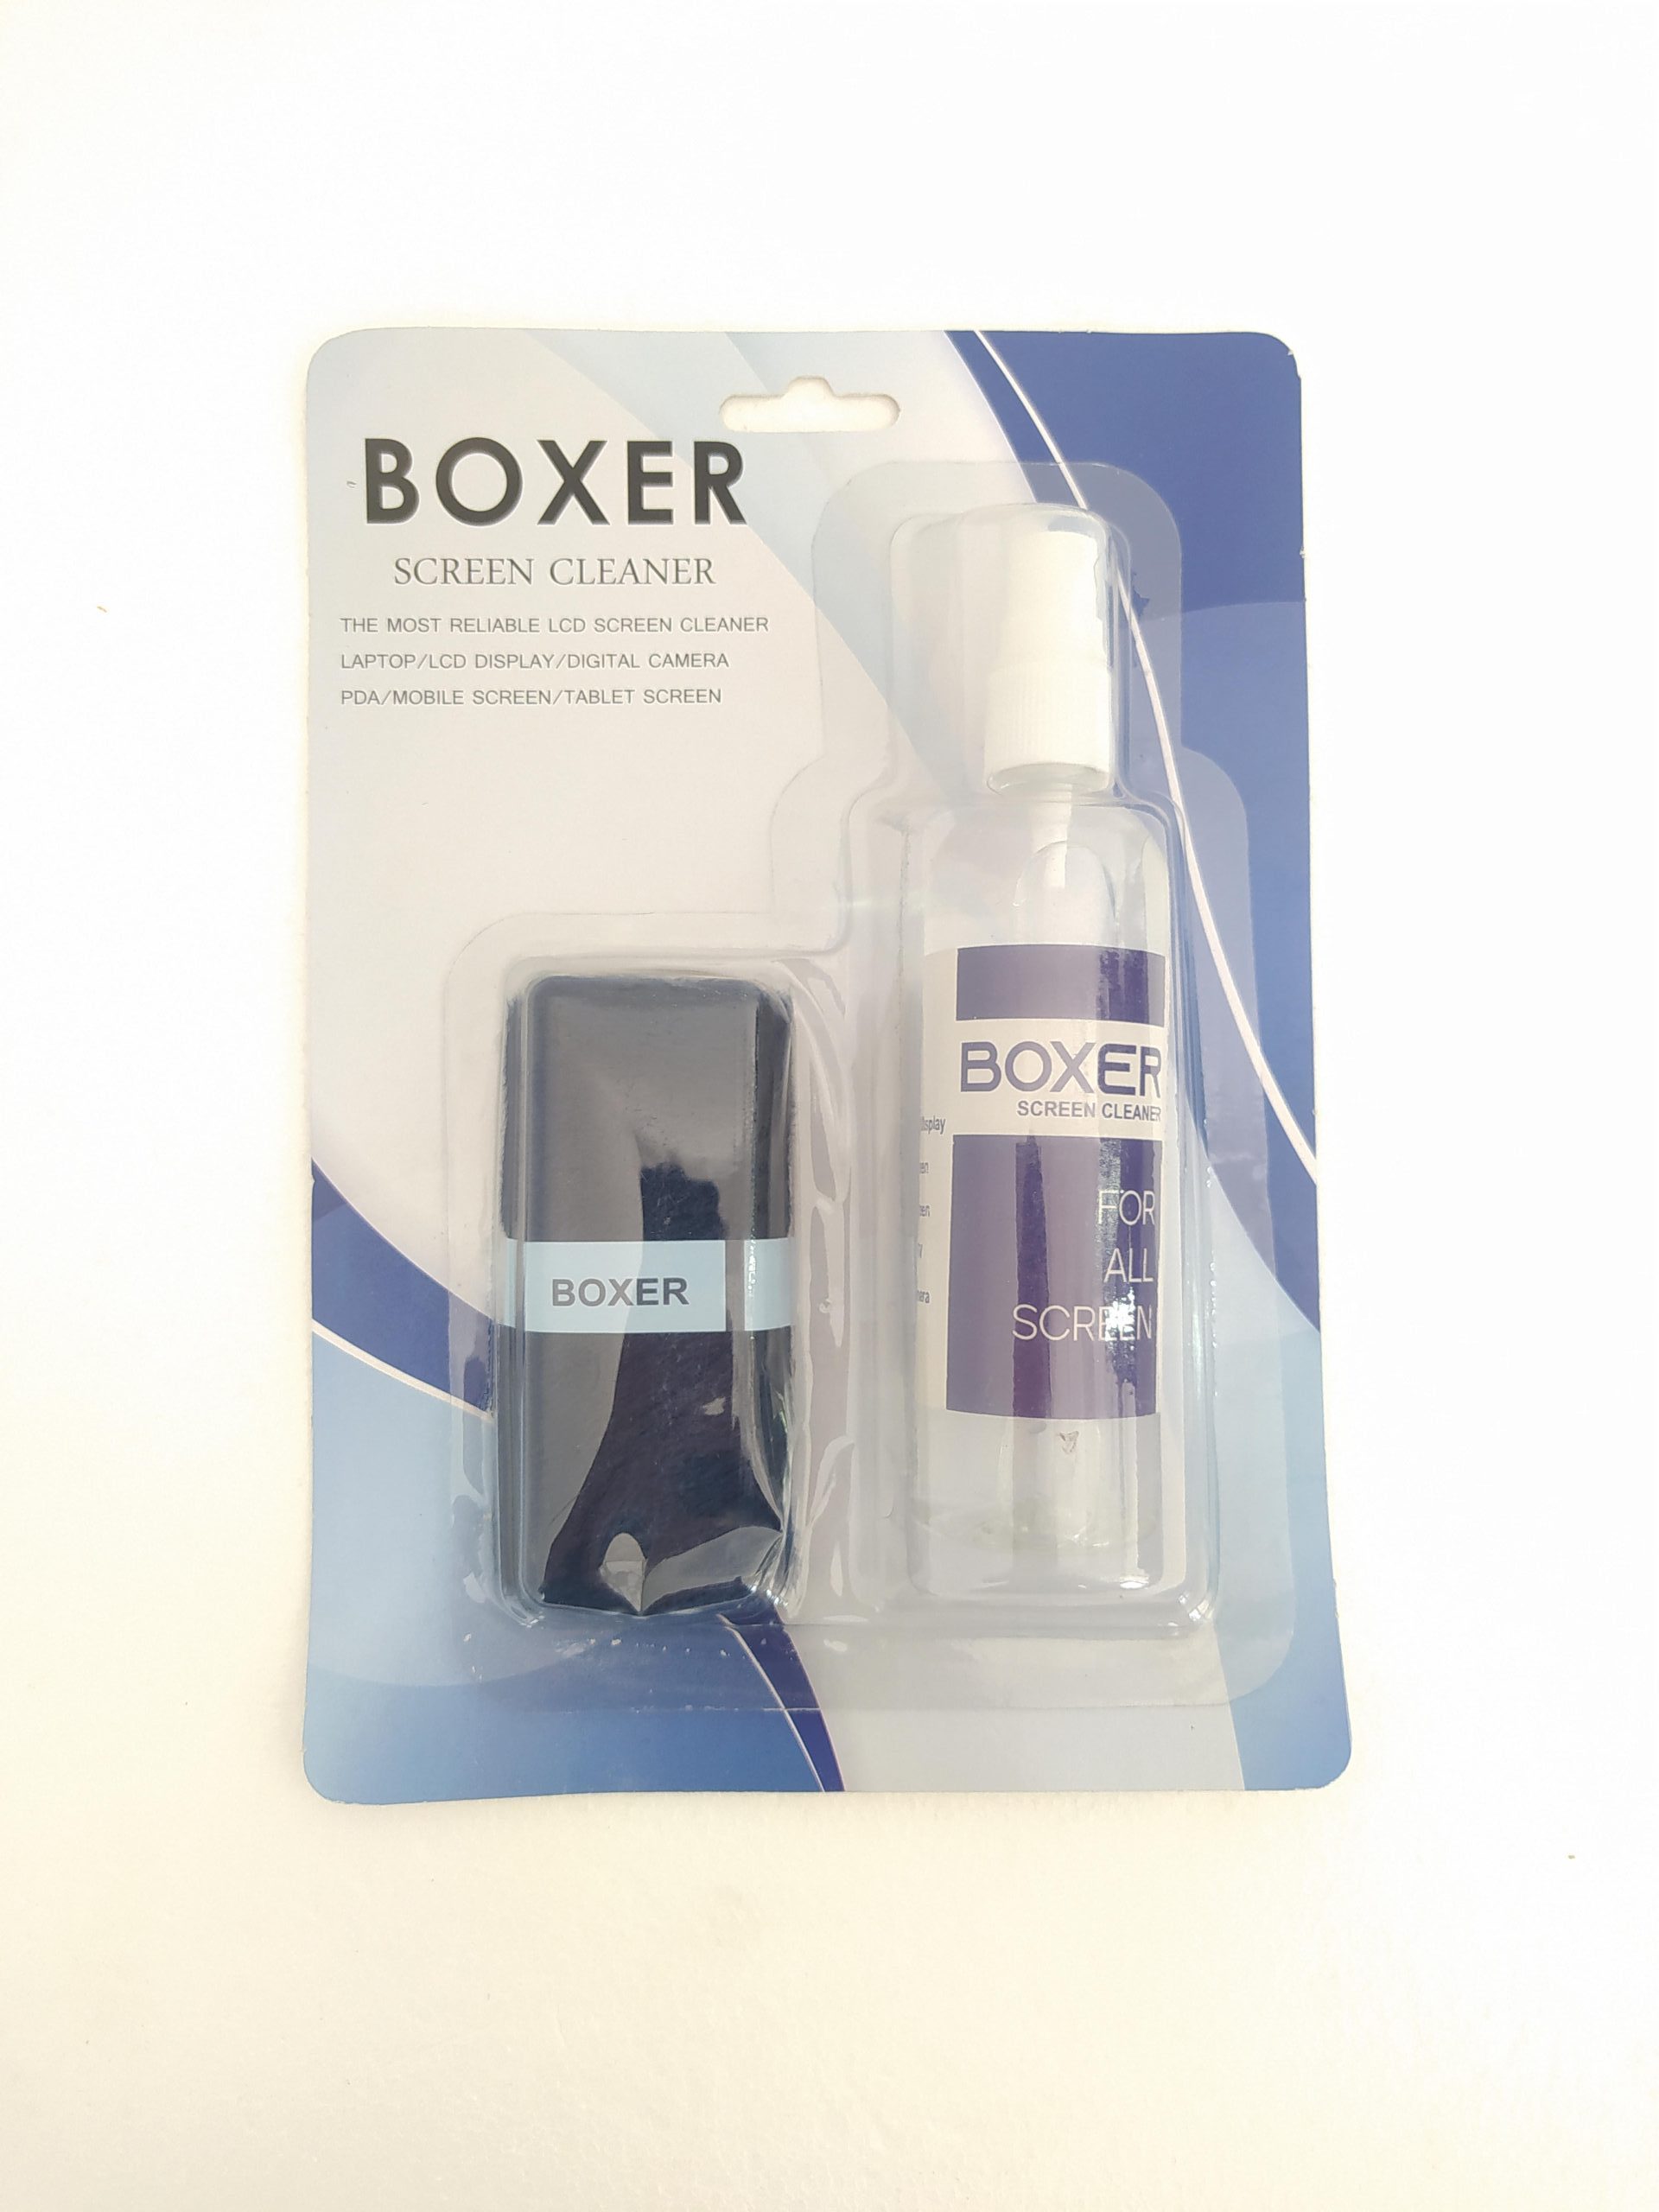 تمیز کننده BOXER CL-07 / مخصوص سطوح و صفحه نمایش / به همراه دستمال نانو / تک پک جعبه ای